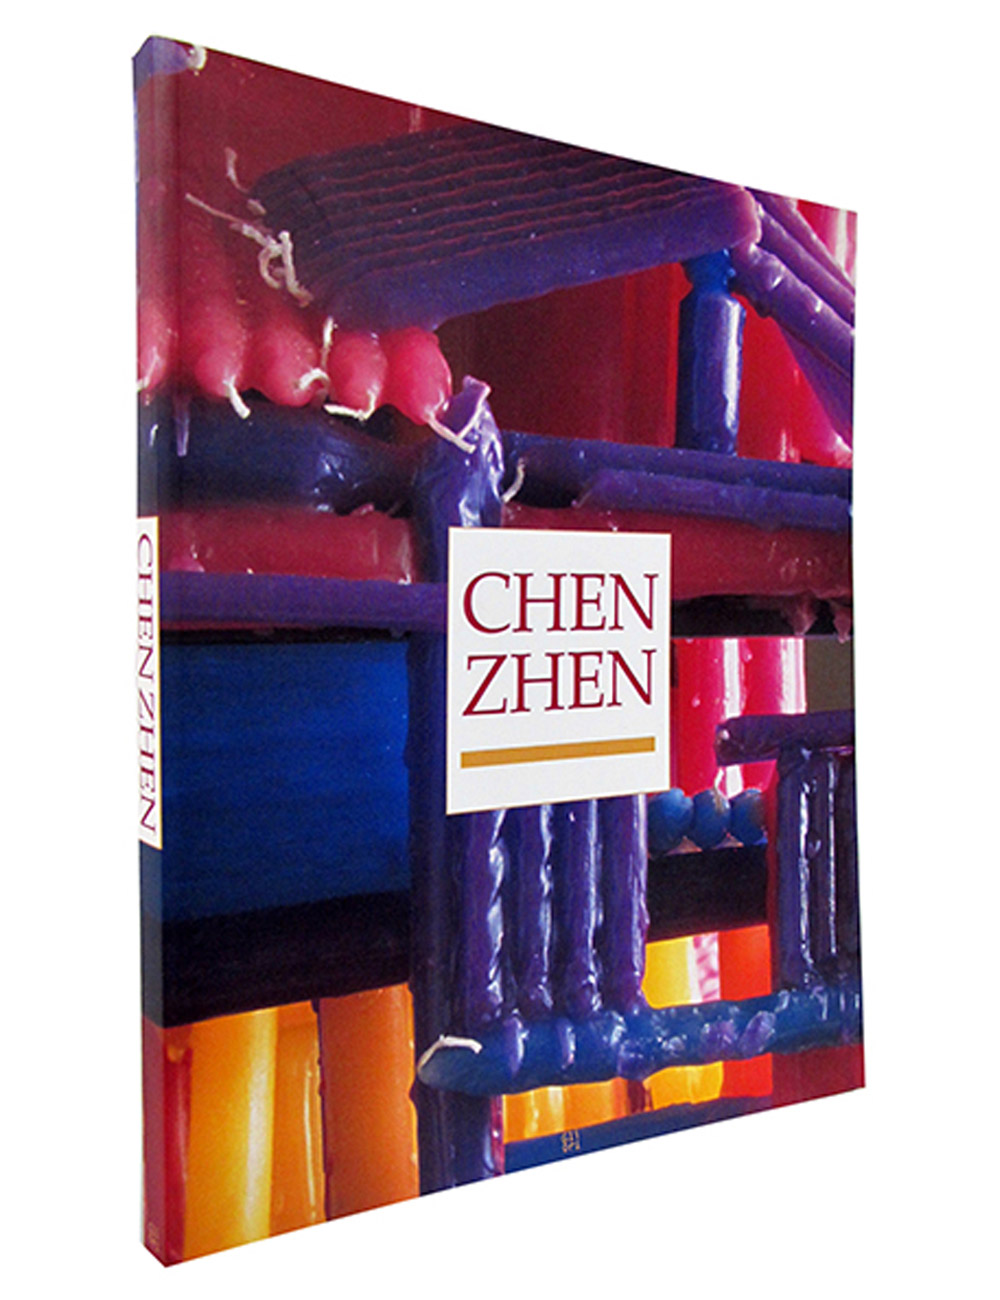 CHEN ZHEN, 2003